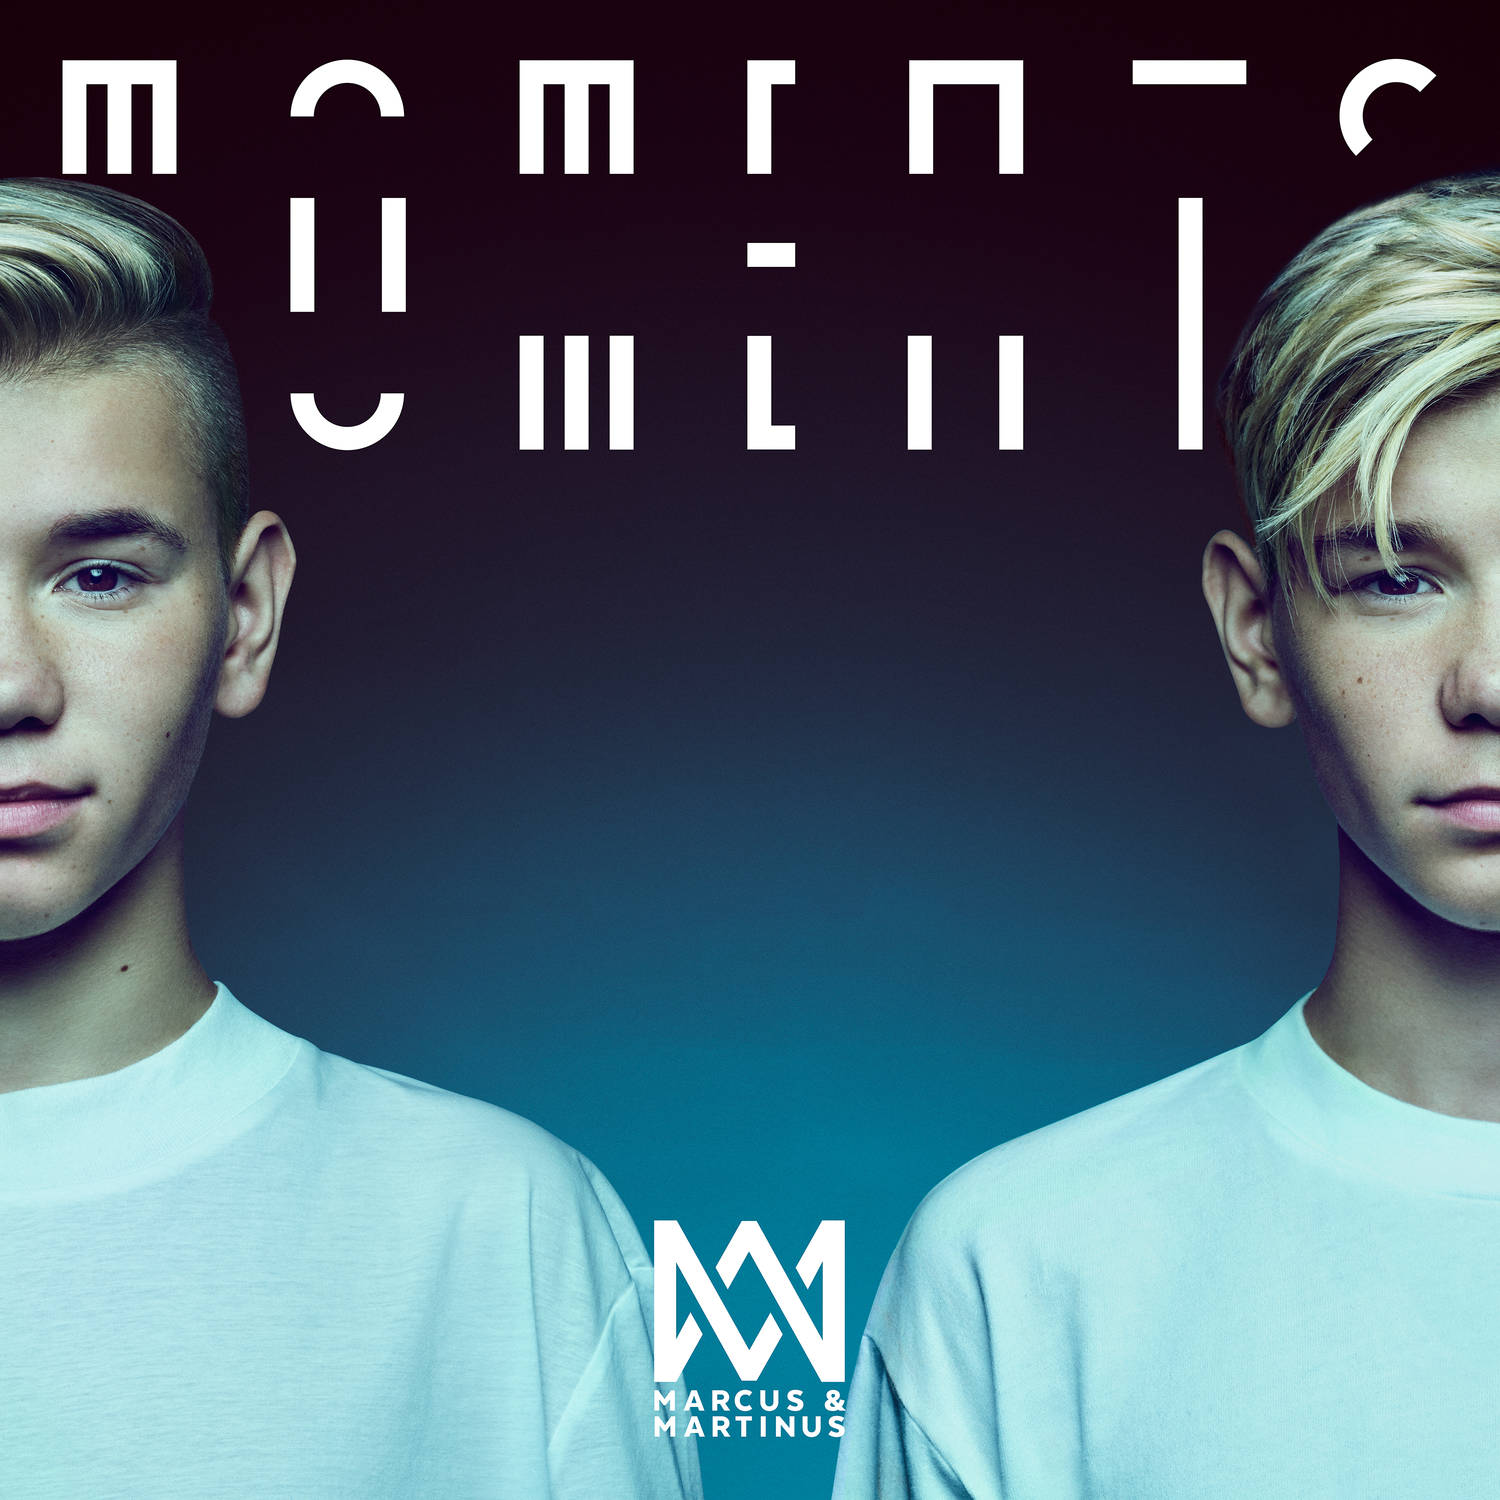 Norveške teen zvijezde Marcus & Martinus gostuju u Zagrebu! Fanovi dođite na potpisivanje albuma “Moments”